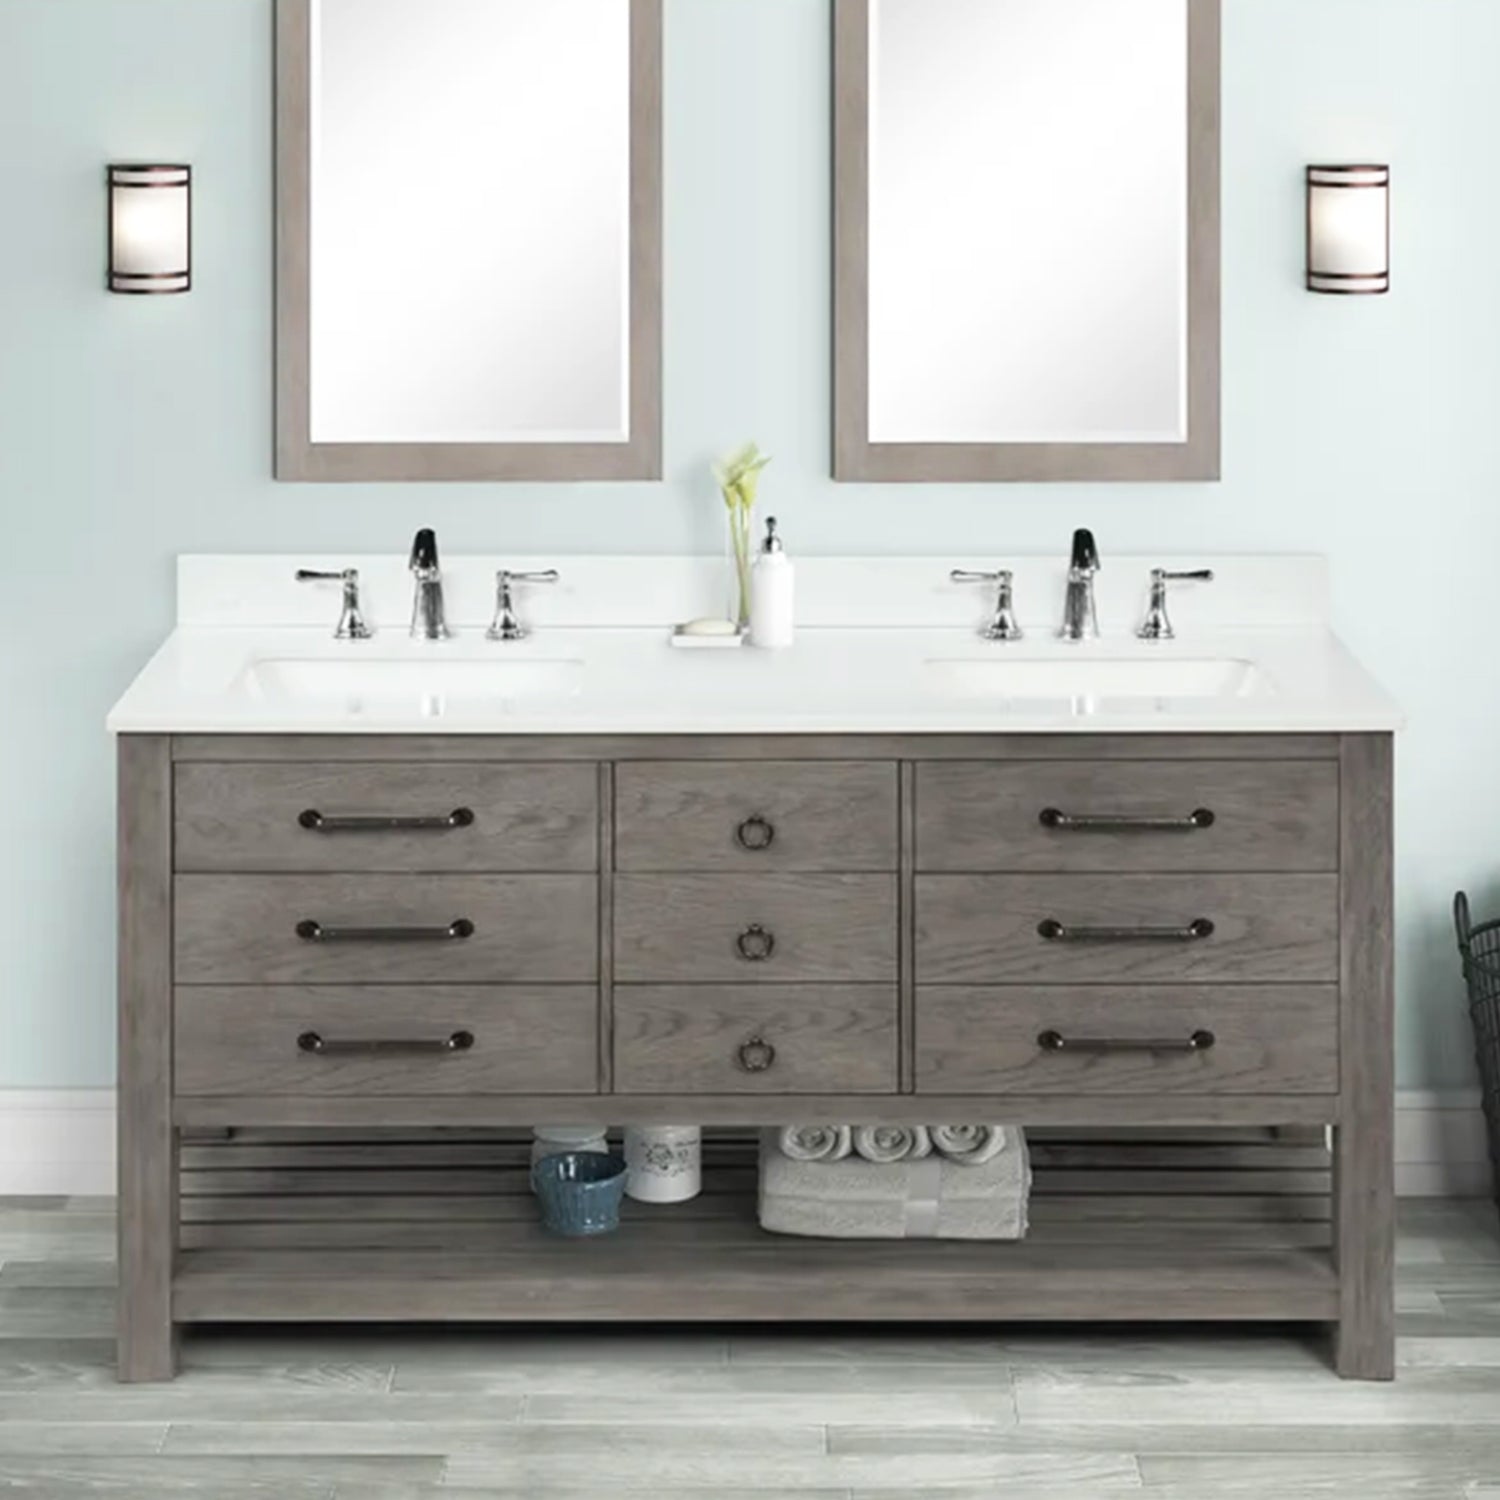 61 inch Nashua Bathroom Vanity With Double Sink